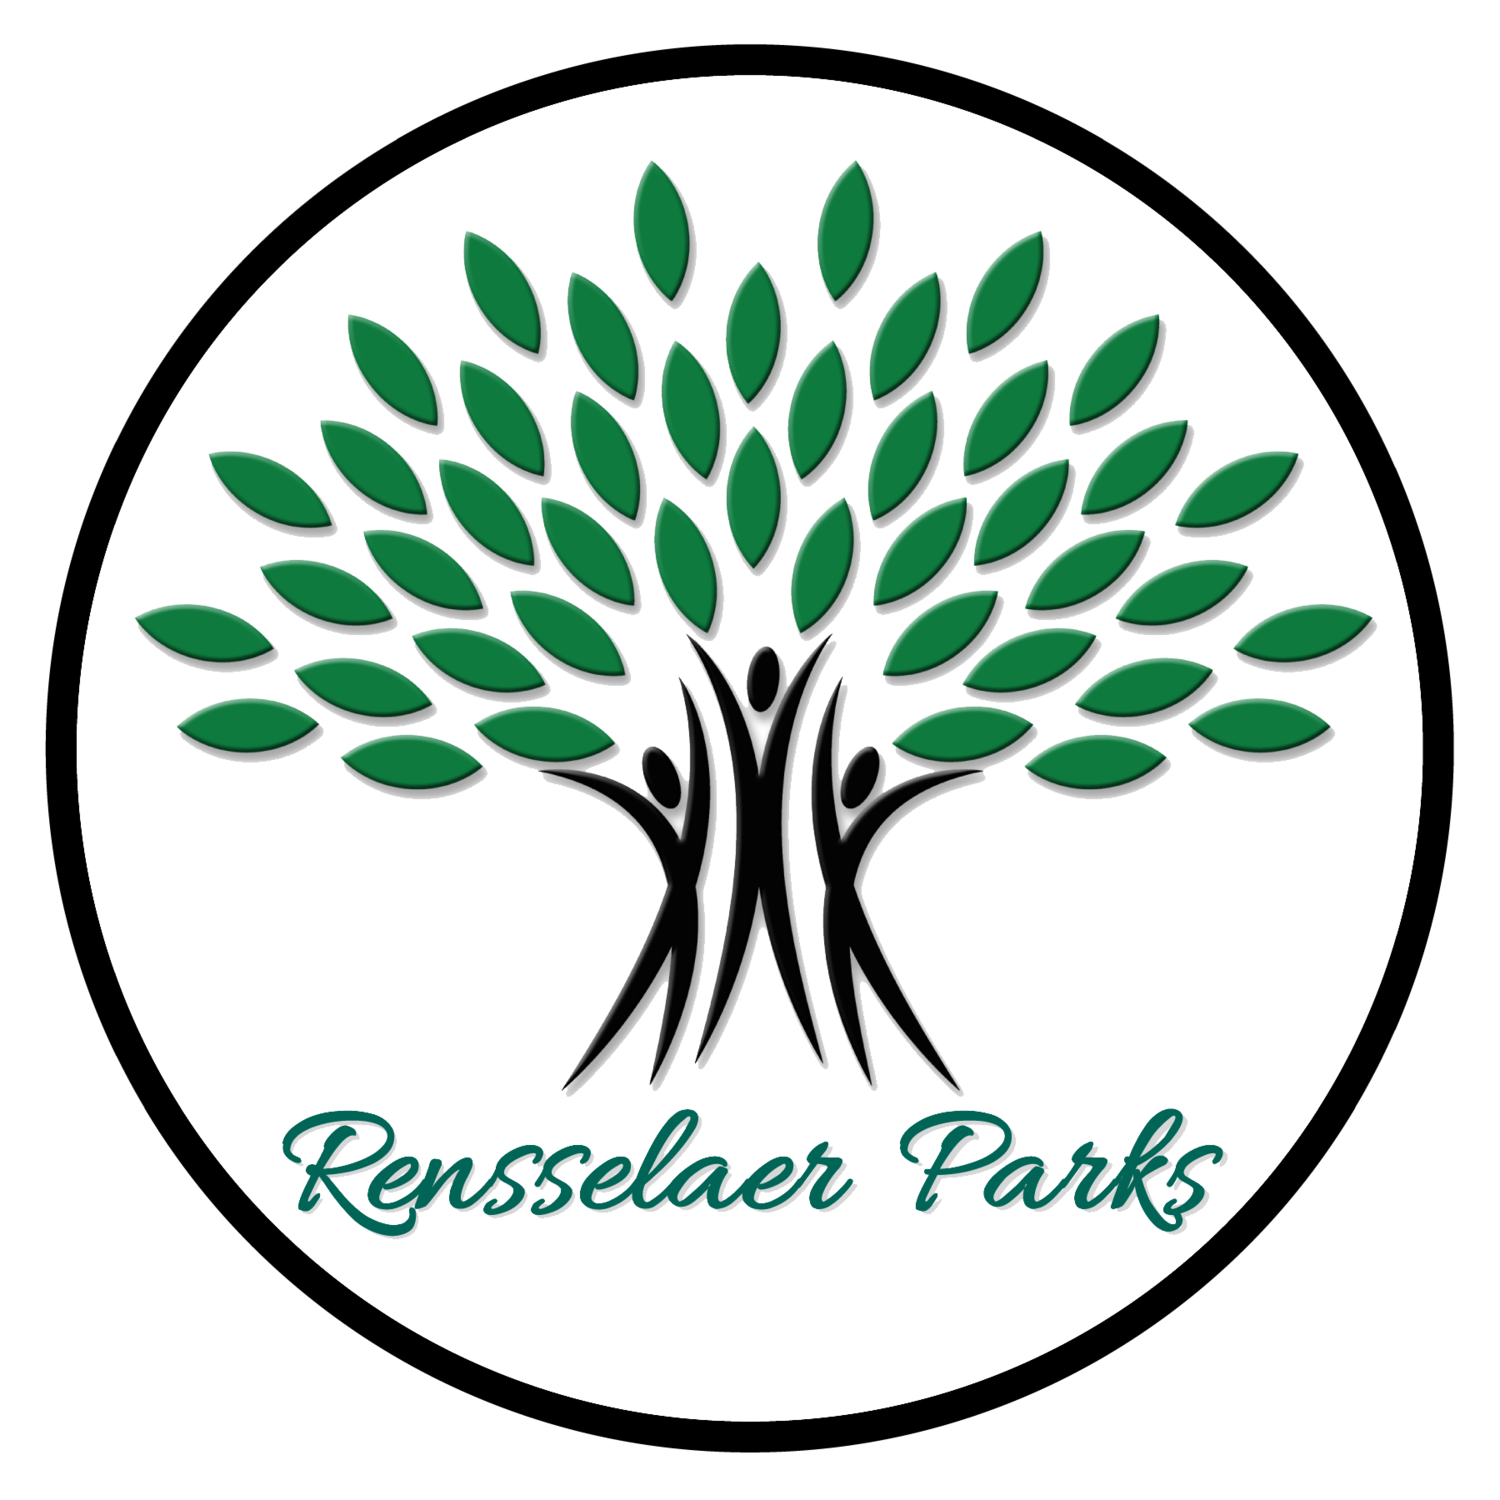 Rensselaer Parks